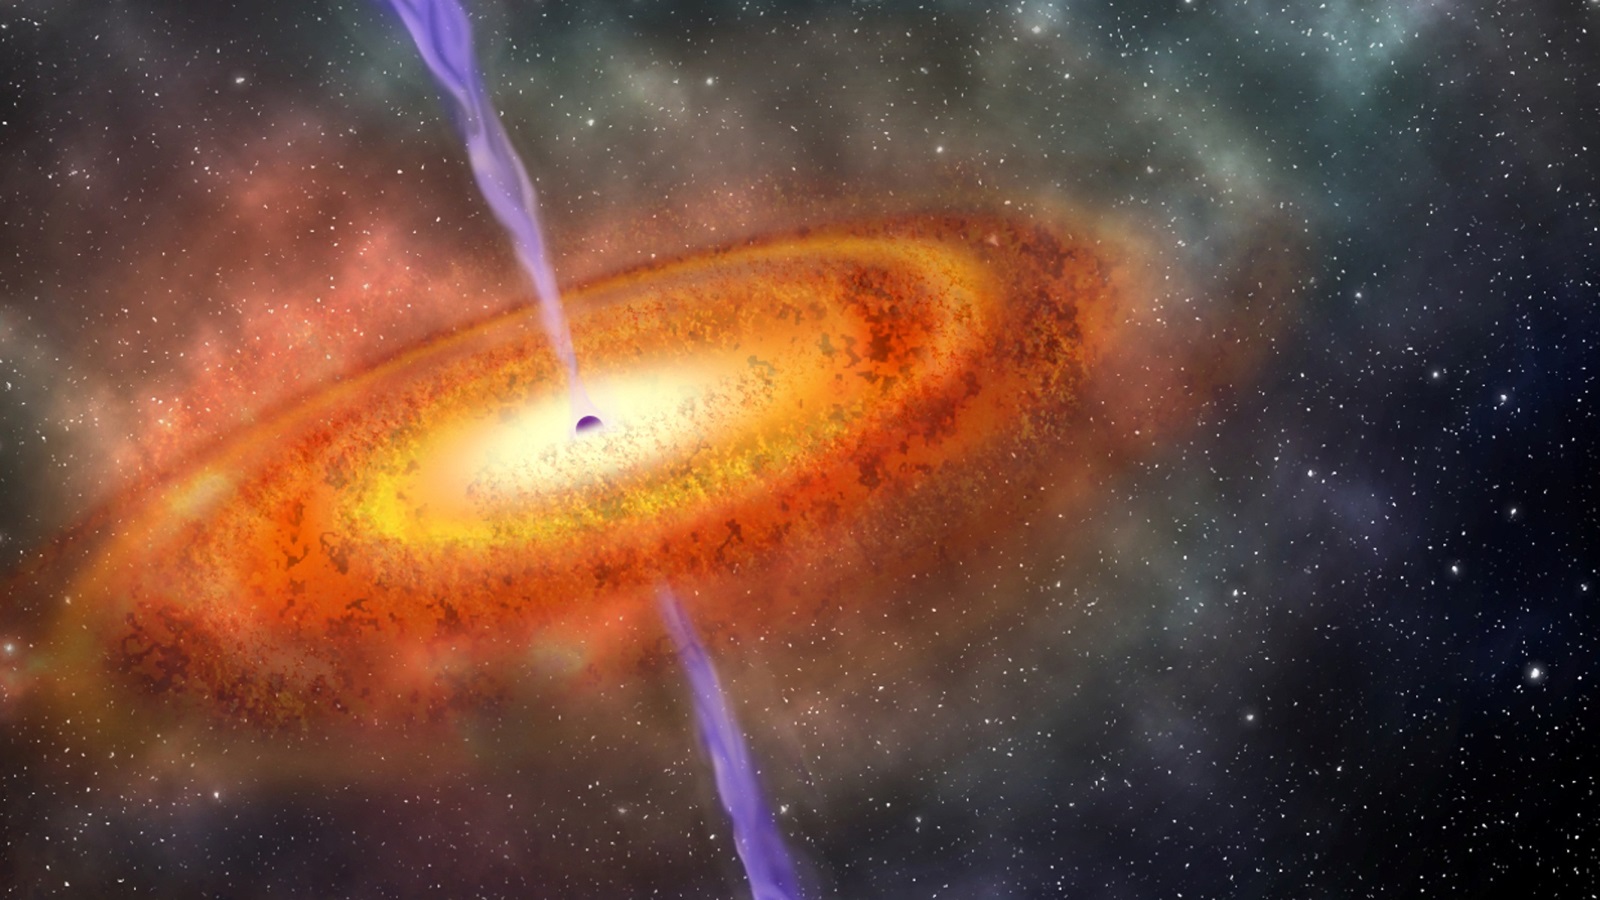 الثقوب السود المكتشفة تبعد عنا 13 مليار سنة أي عندما كان عمر الكون يعادل 10% من عمره الحالي (رويترز)